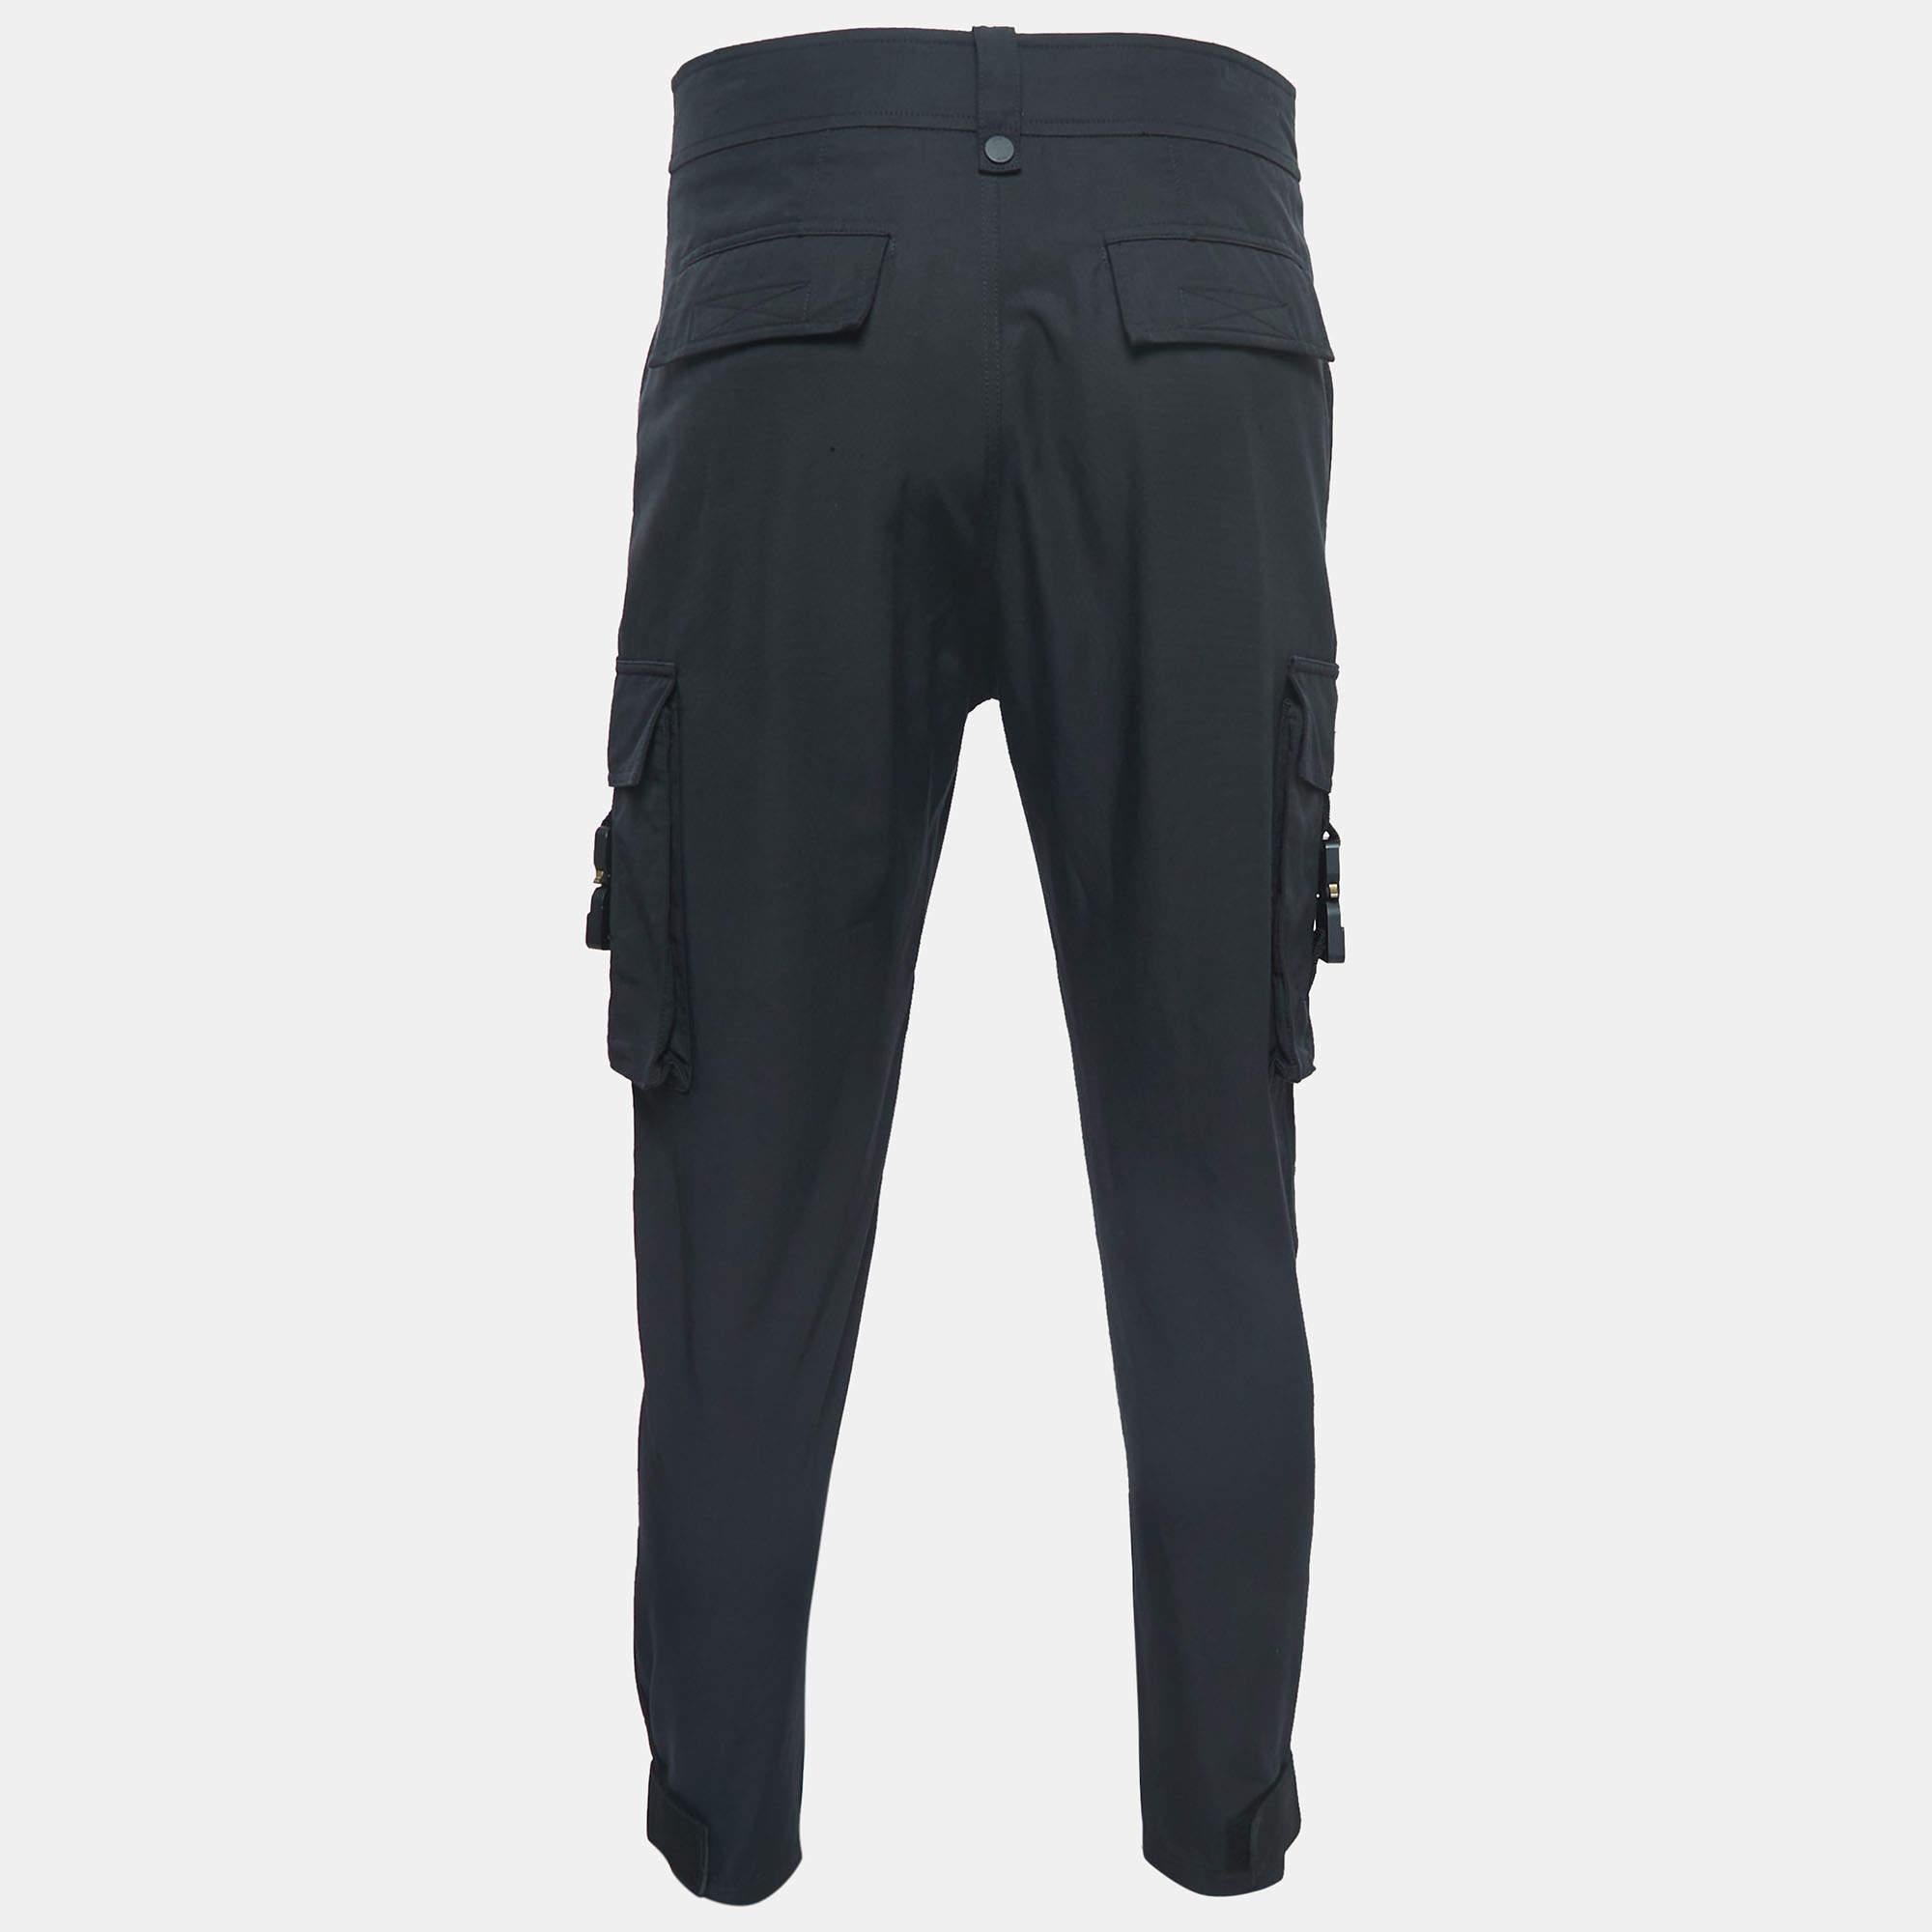 Les pantalons cargo de Dior Homme respirent la sophistication urbaine. Confectionné en coton technique de haute qualité, doté de poches cargo et d'une boucle CD distinctive, ce pantalon allie harmonieusement style et fonctionnalité pour des